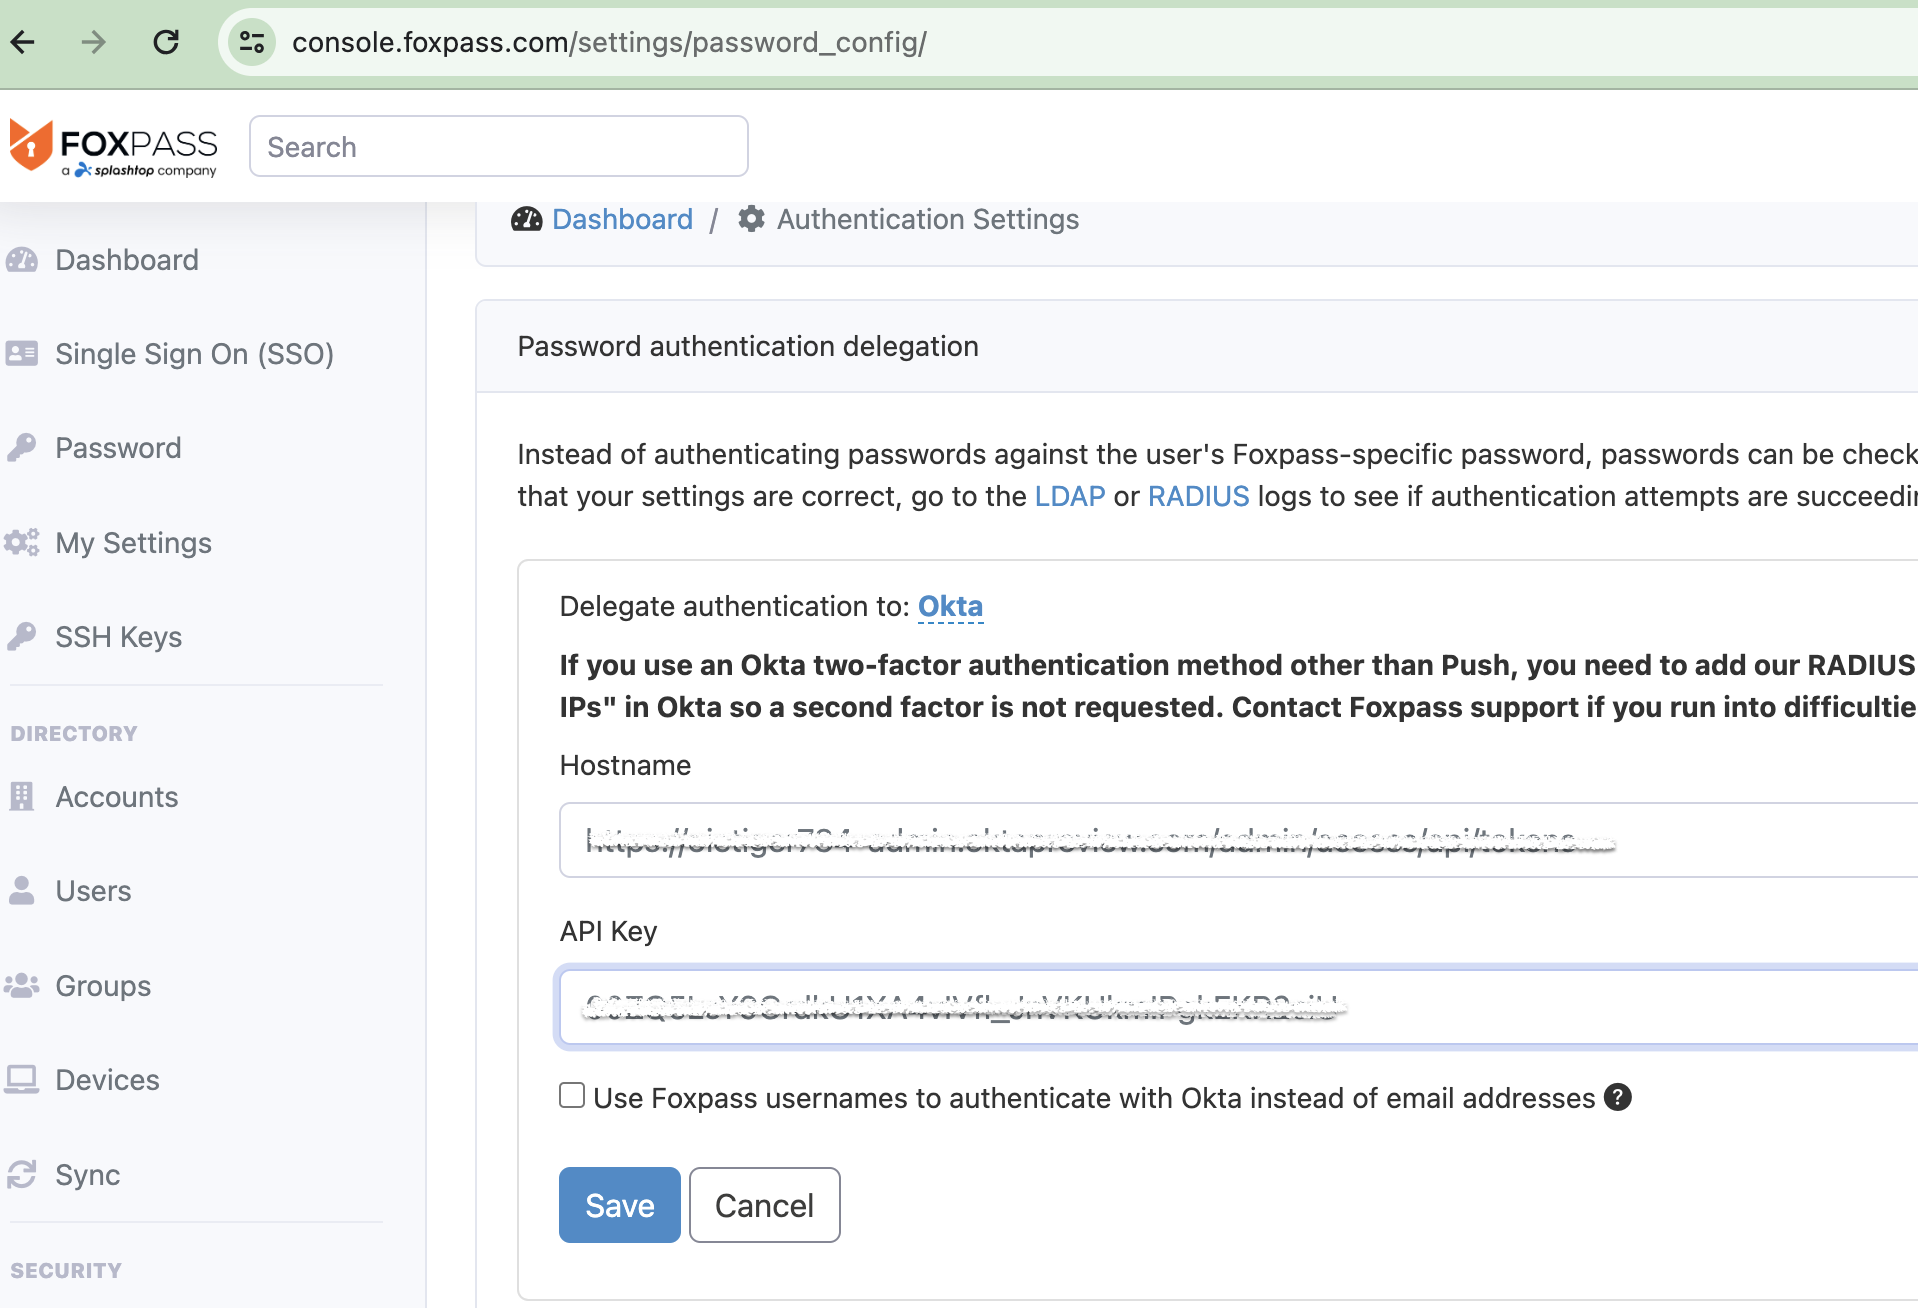 Enter Okta site's Hostname and API Key